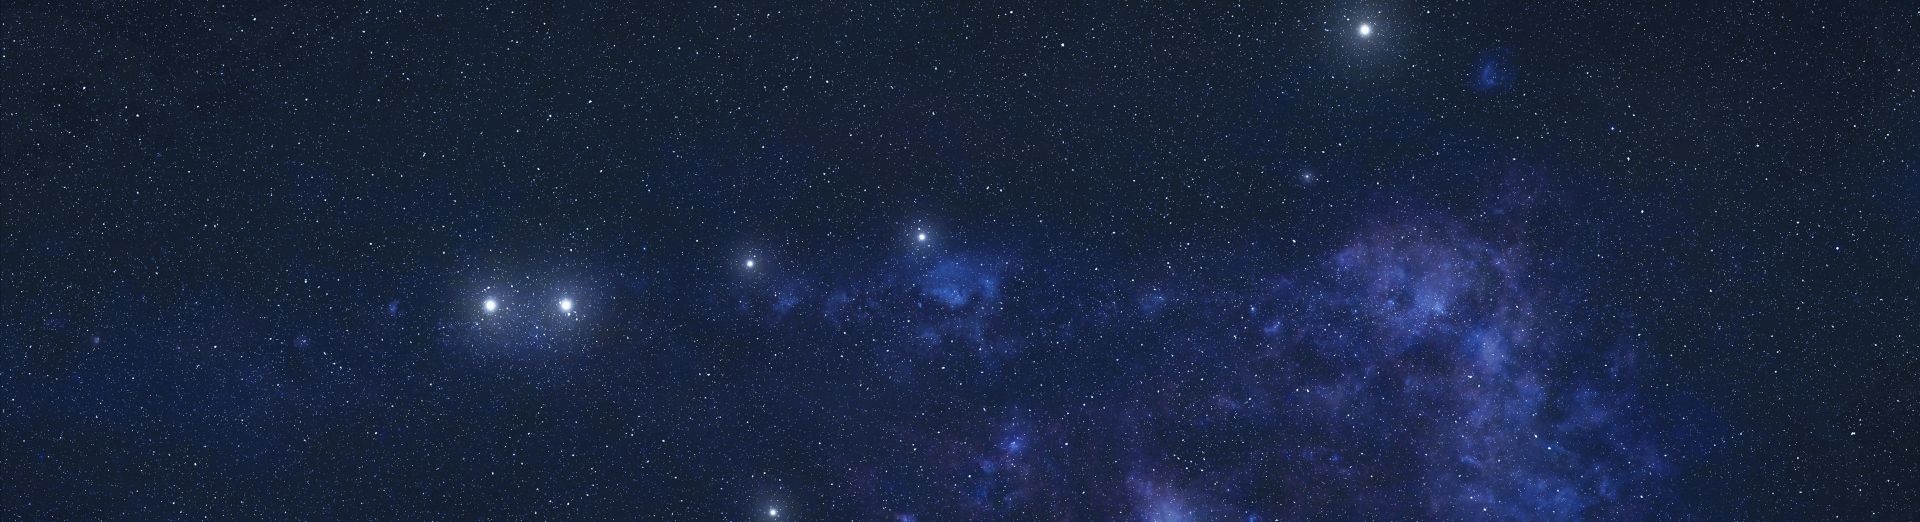 Capricornus constellation in outer space